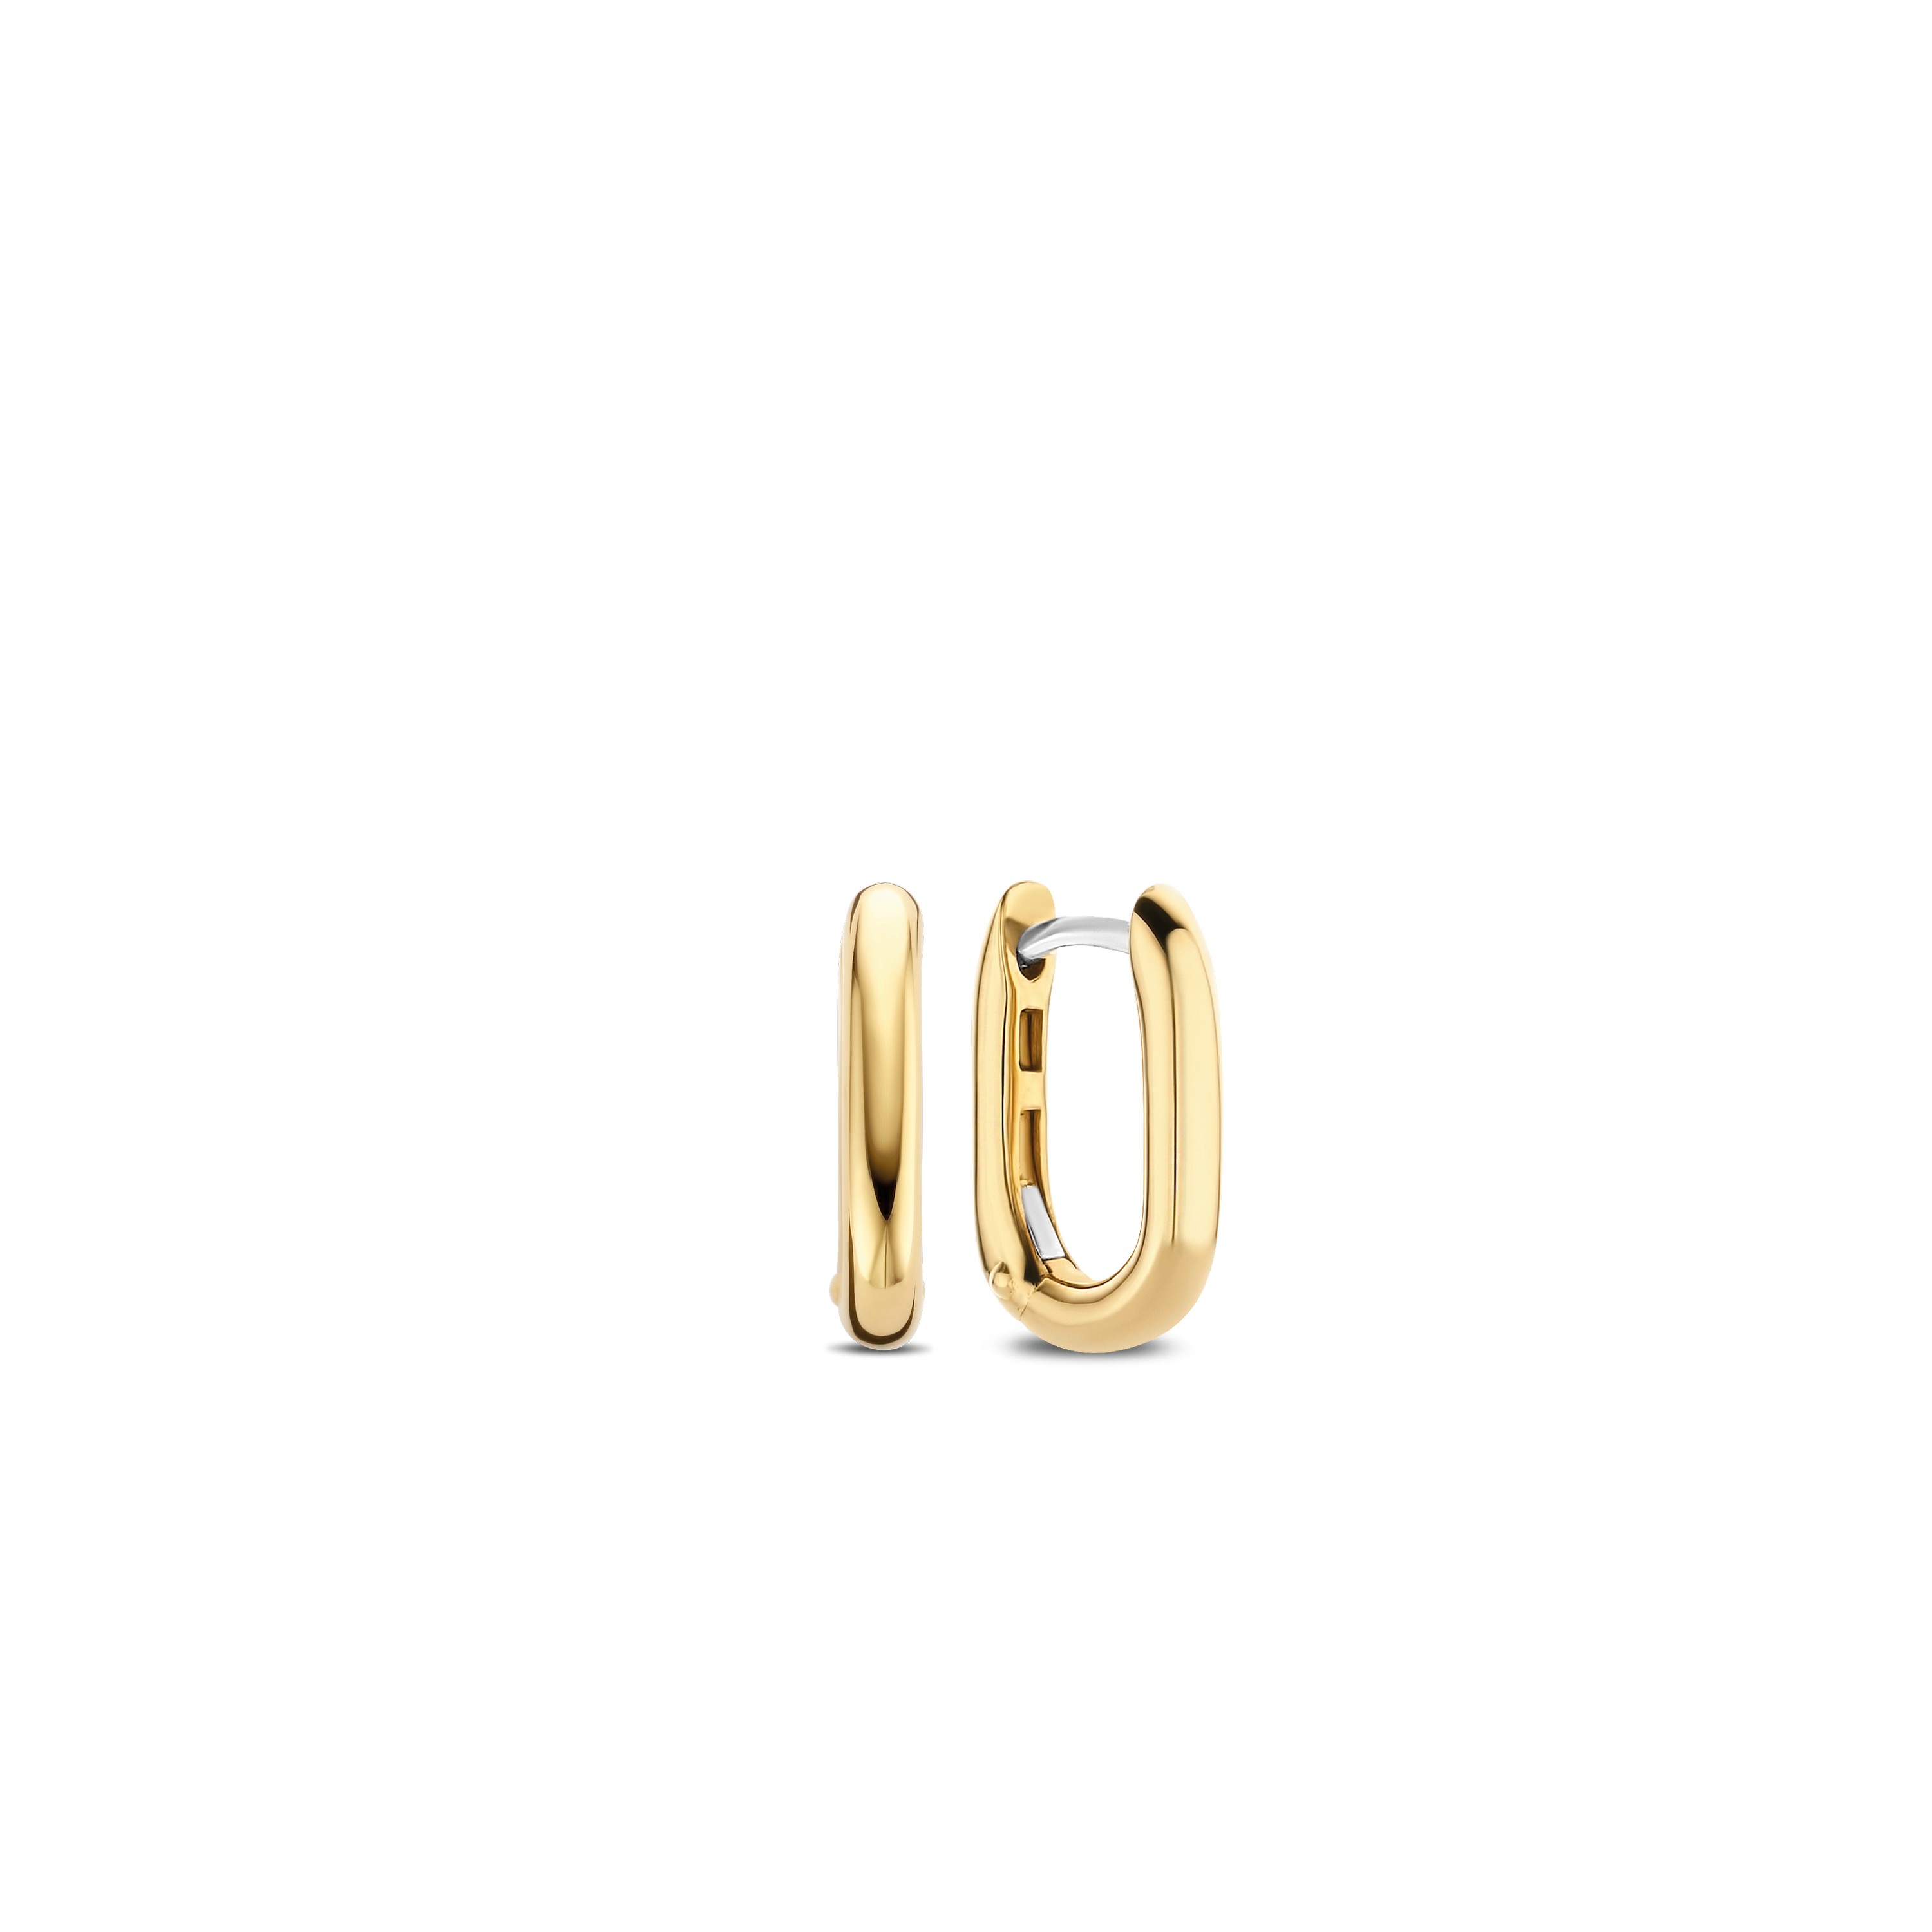 TI SENTO - Milano Earrings 7845SY Gala Jewelers Inc. White Oak, PA